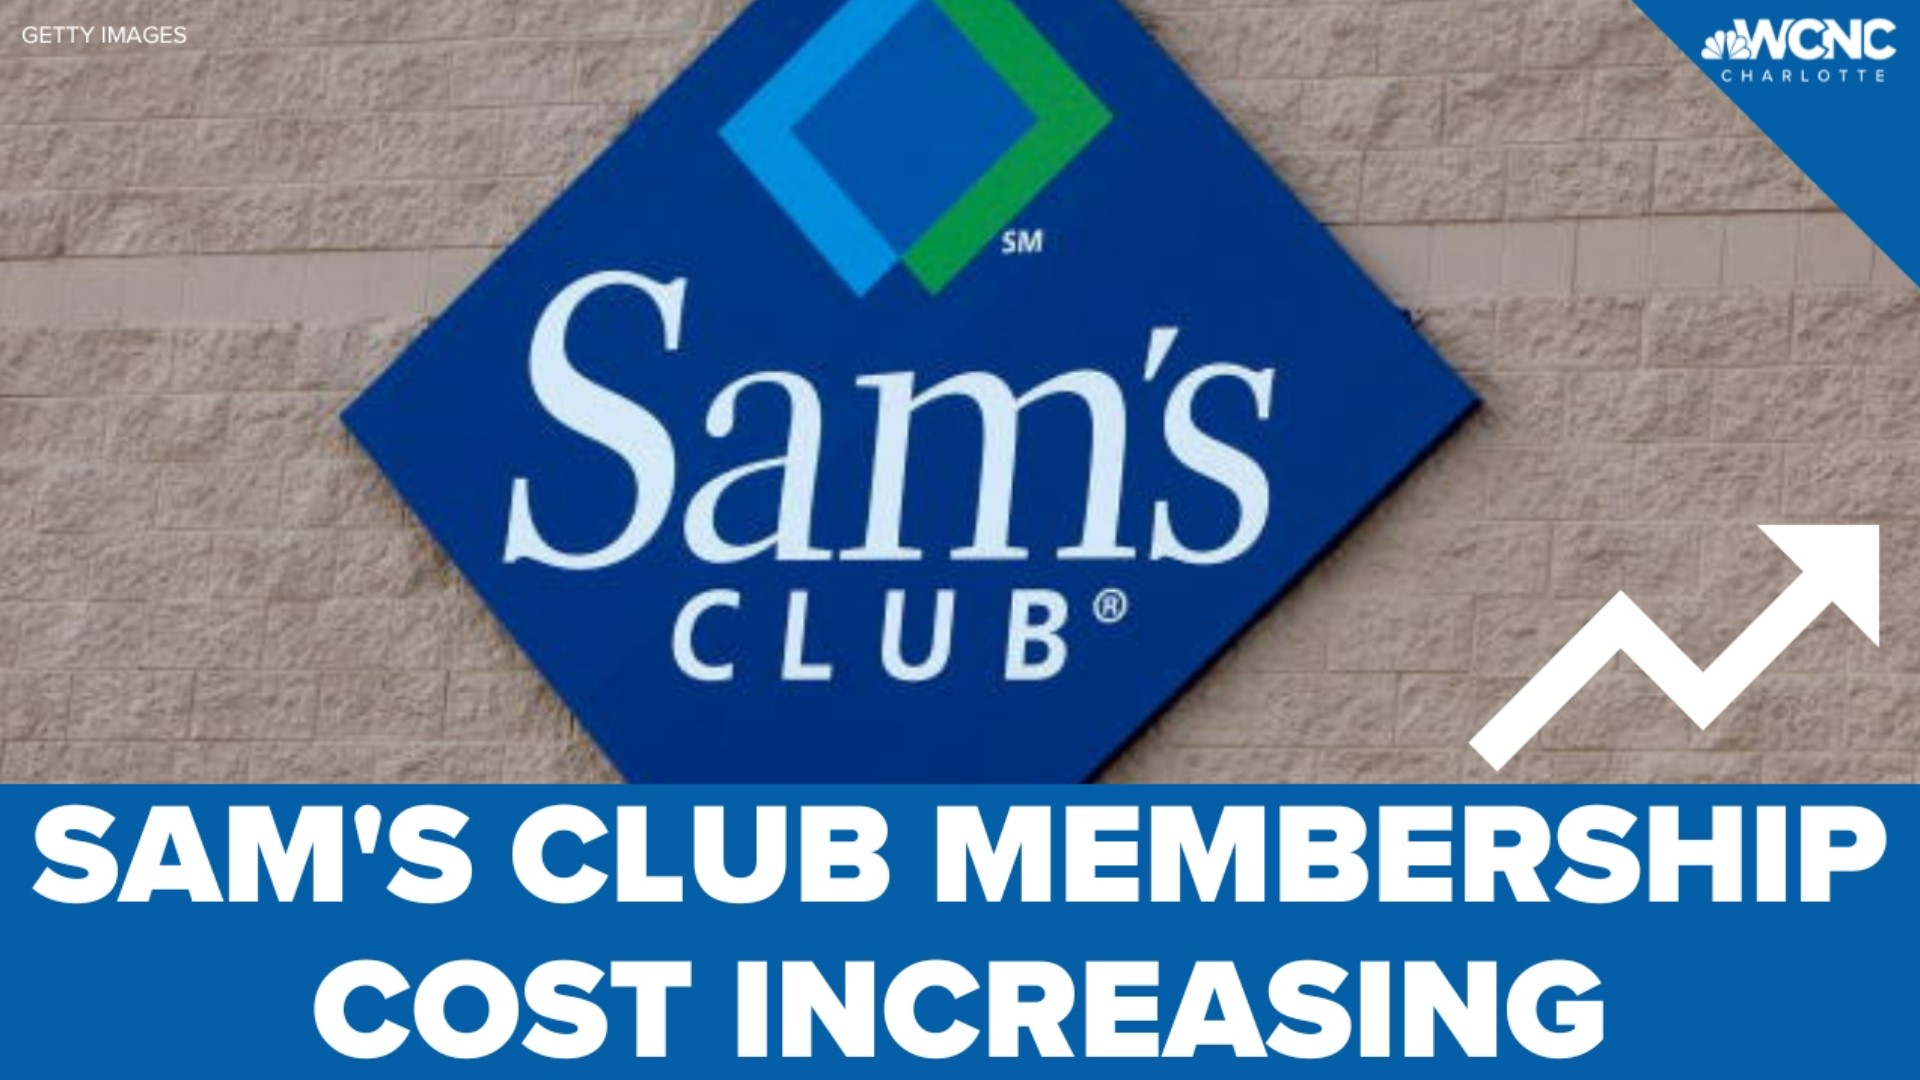 It'll soon cost you a bit more to have a Sam's Club membership.